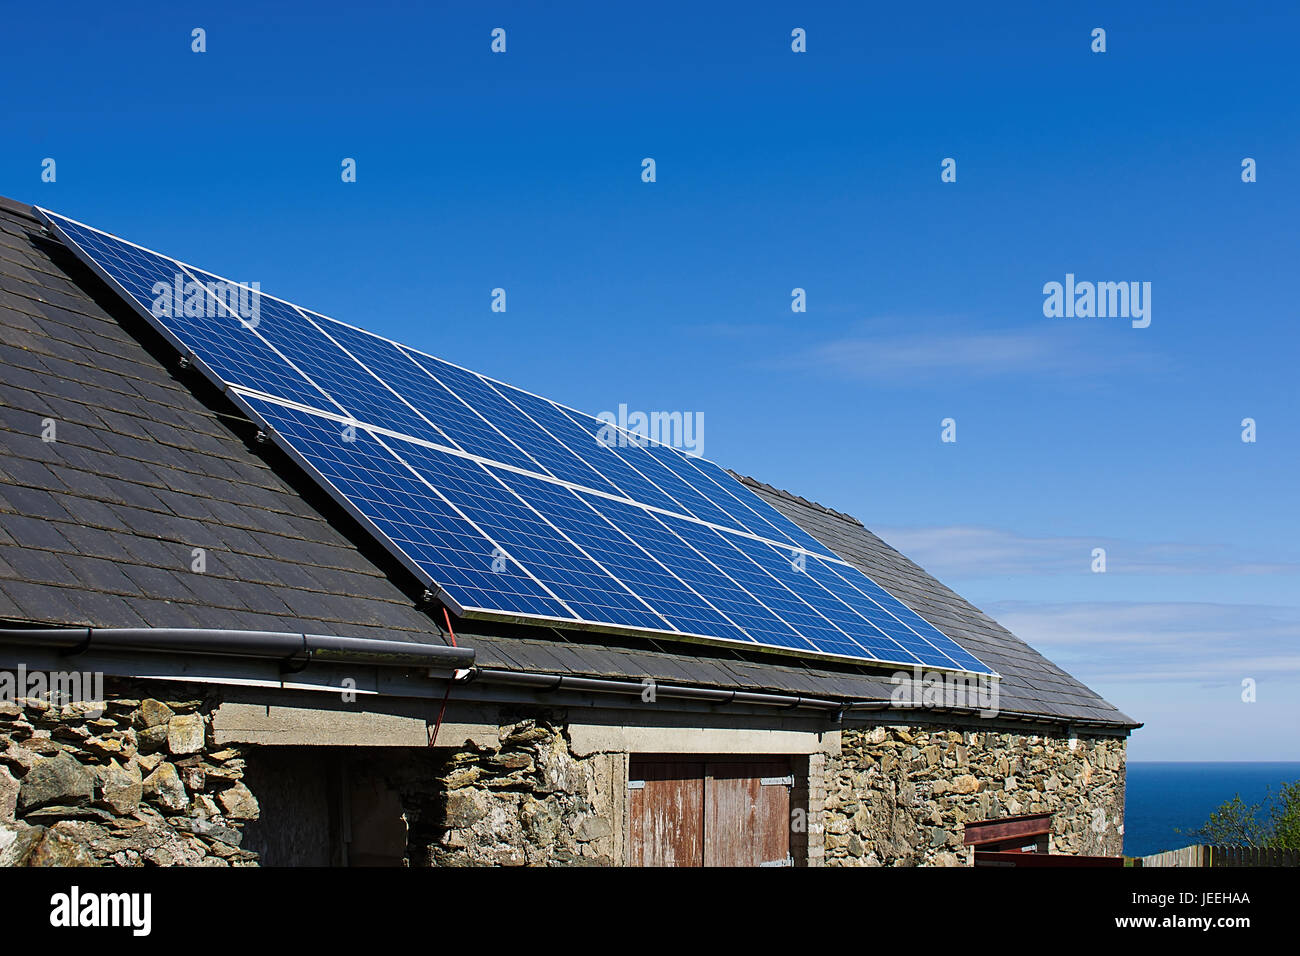 Panel solar en el tejado de pizarra, el cielo azul de fondo, Anglesey, Norte de Gales, Reino Unido.panel solar en el techo de la casa inclinada, Reino Unido.La célula solar. Foto de stock